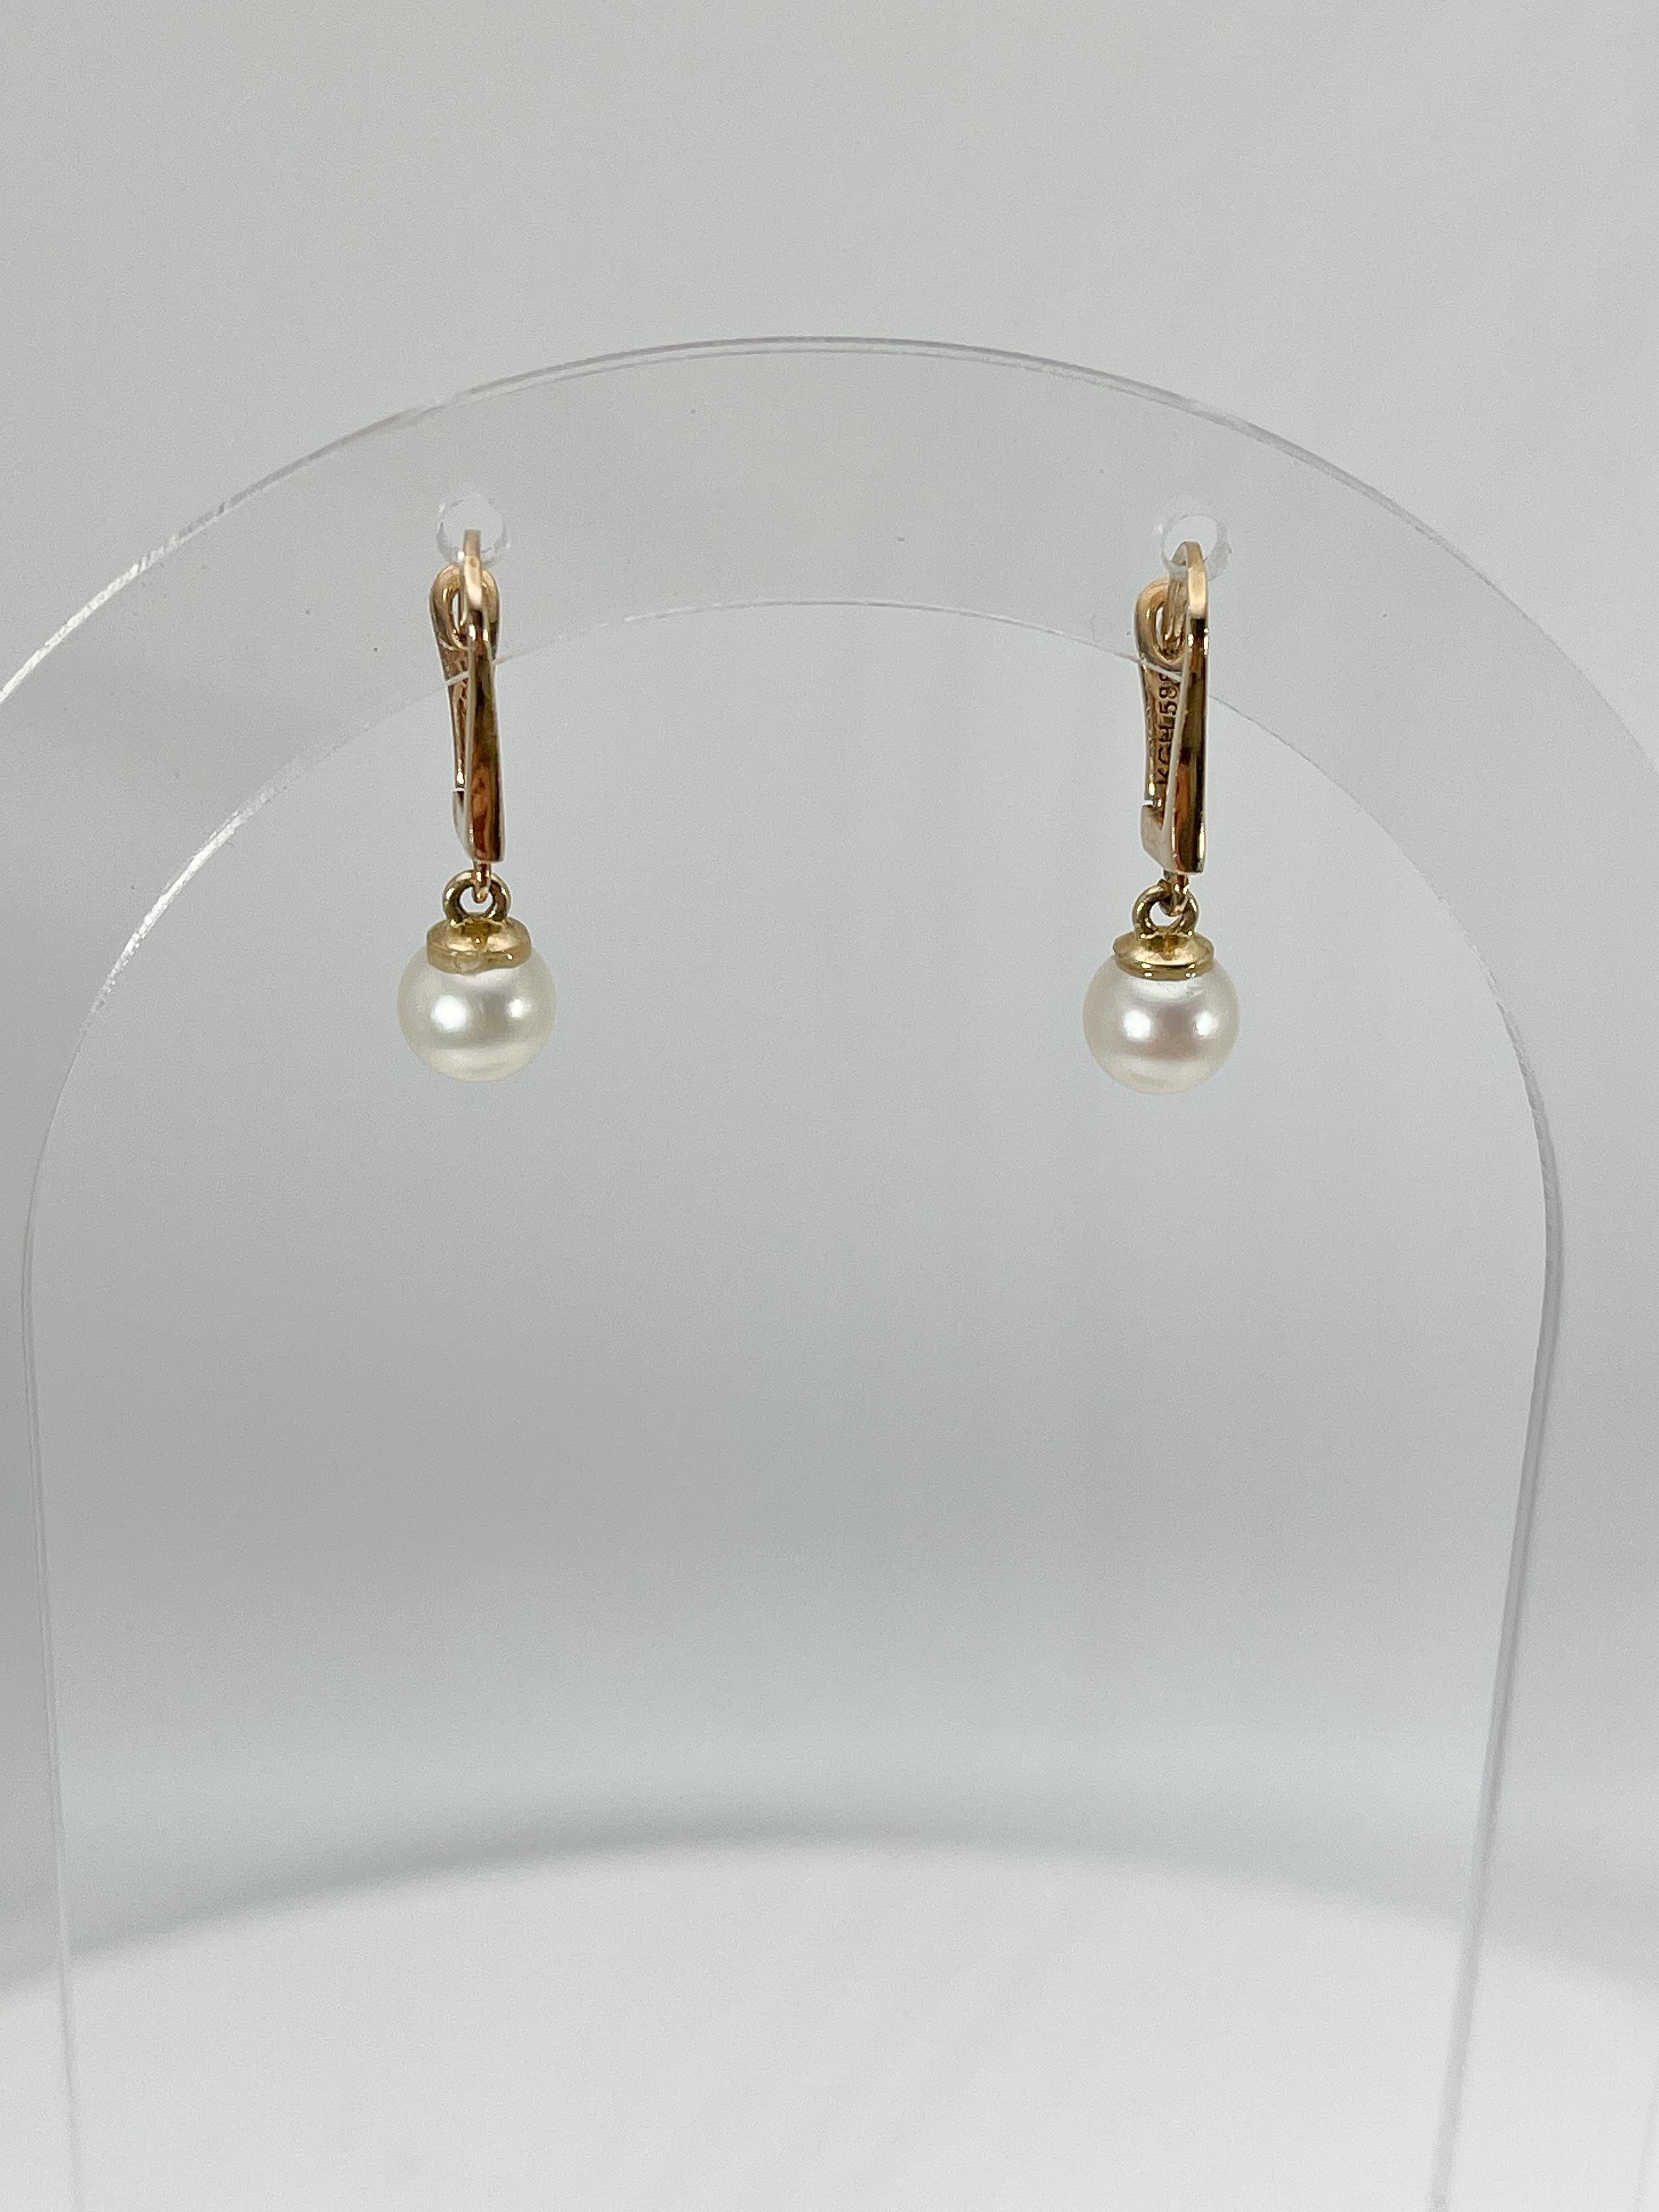 Boucles d'oreilles pendantes en or jaune 14k et perles blanches. La longueur de ces boucles d'oreilles est de 20,5, le diamètre de la perle est de 6 mm et leur poids total est de 2,06 grammes.